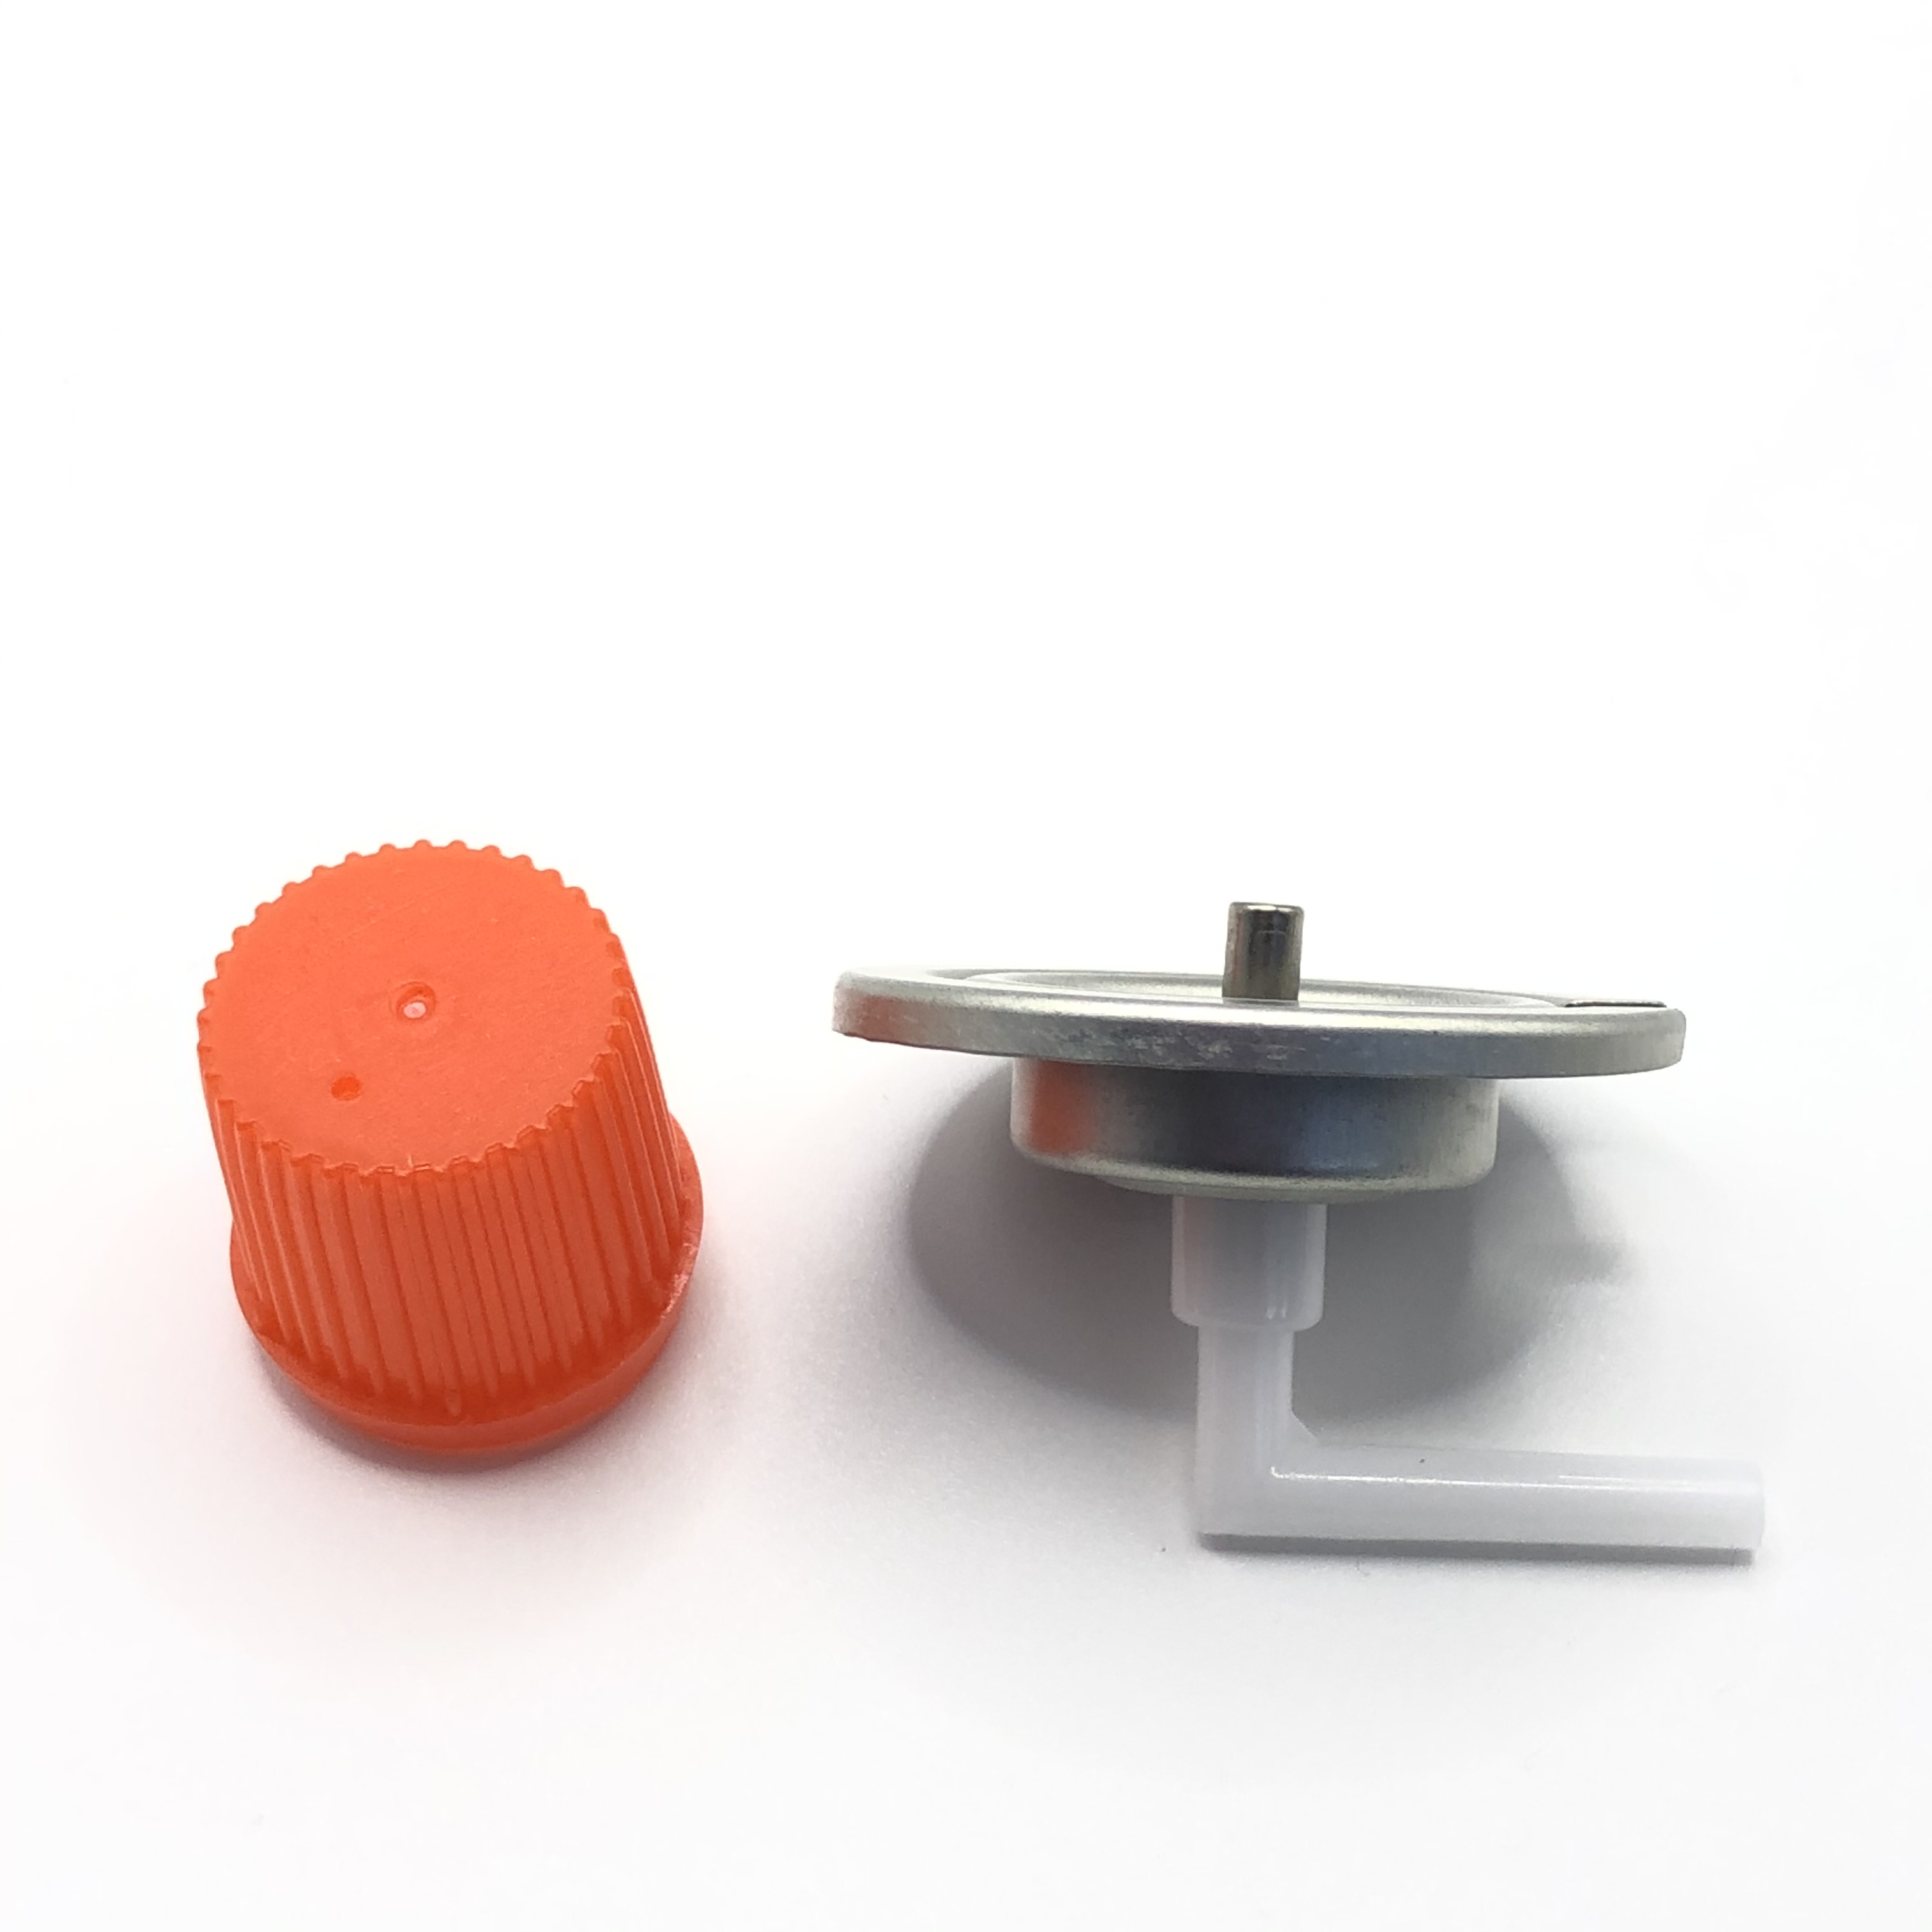 Компактный бутановый газовый клапан - раствор для экономии космического обеспечения для небольших кухонь и приготовления на открытом воздухе